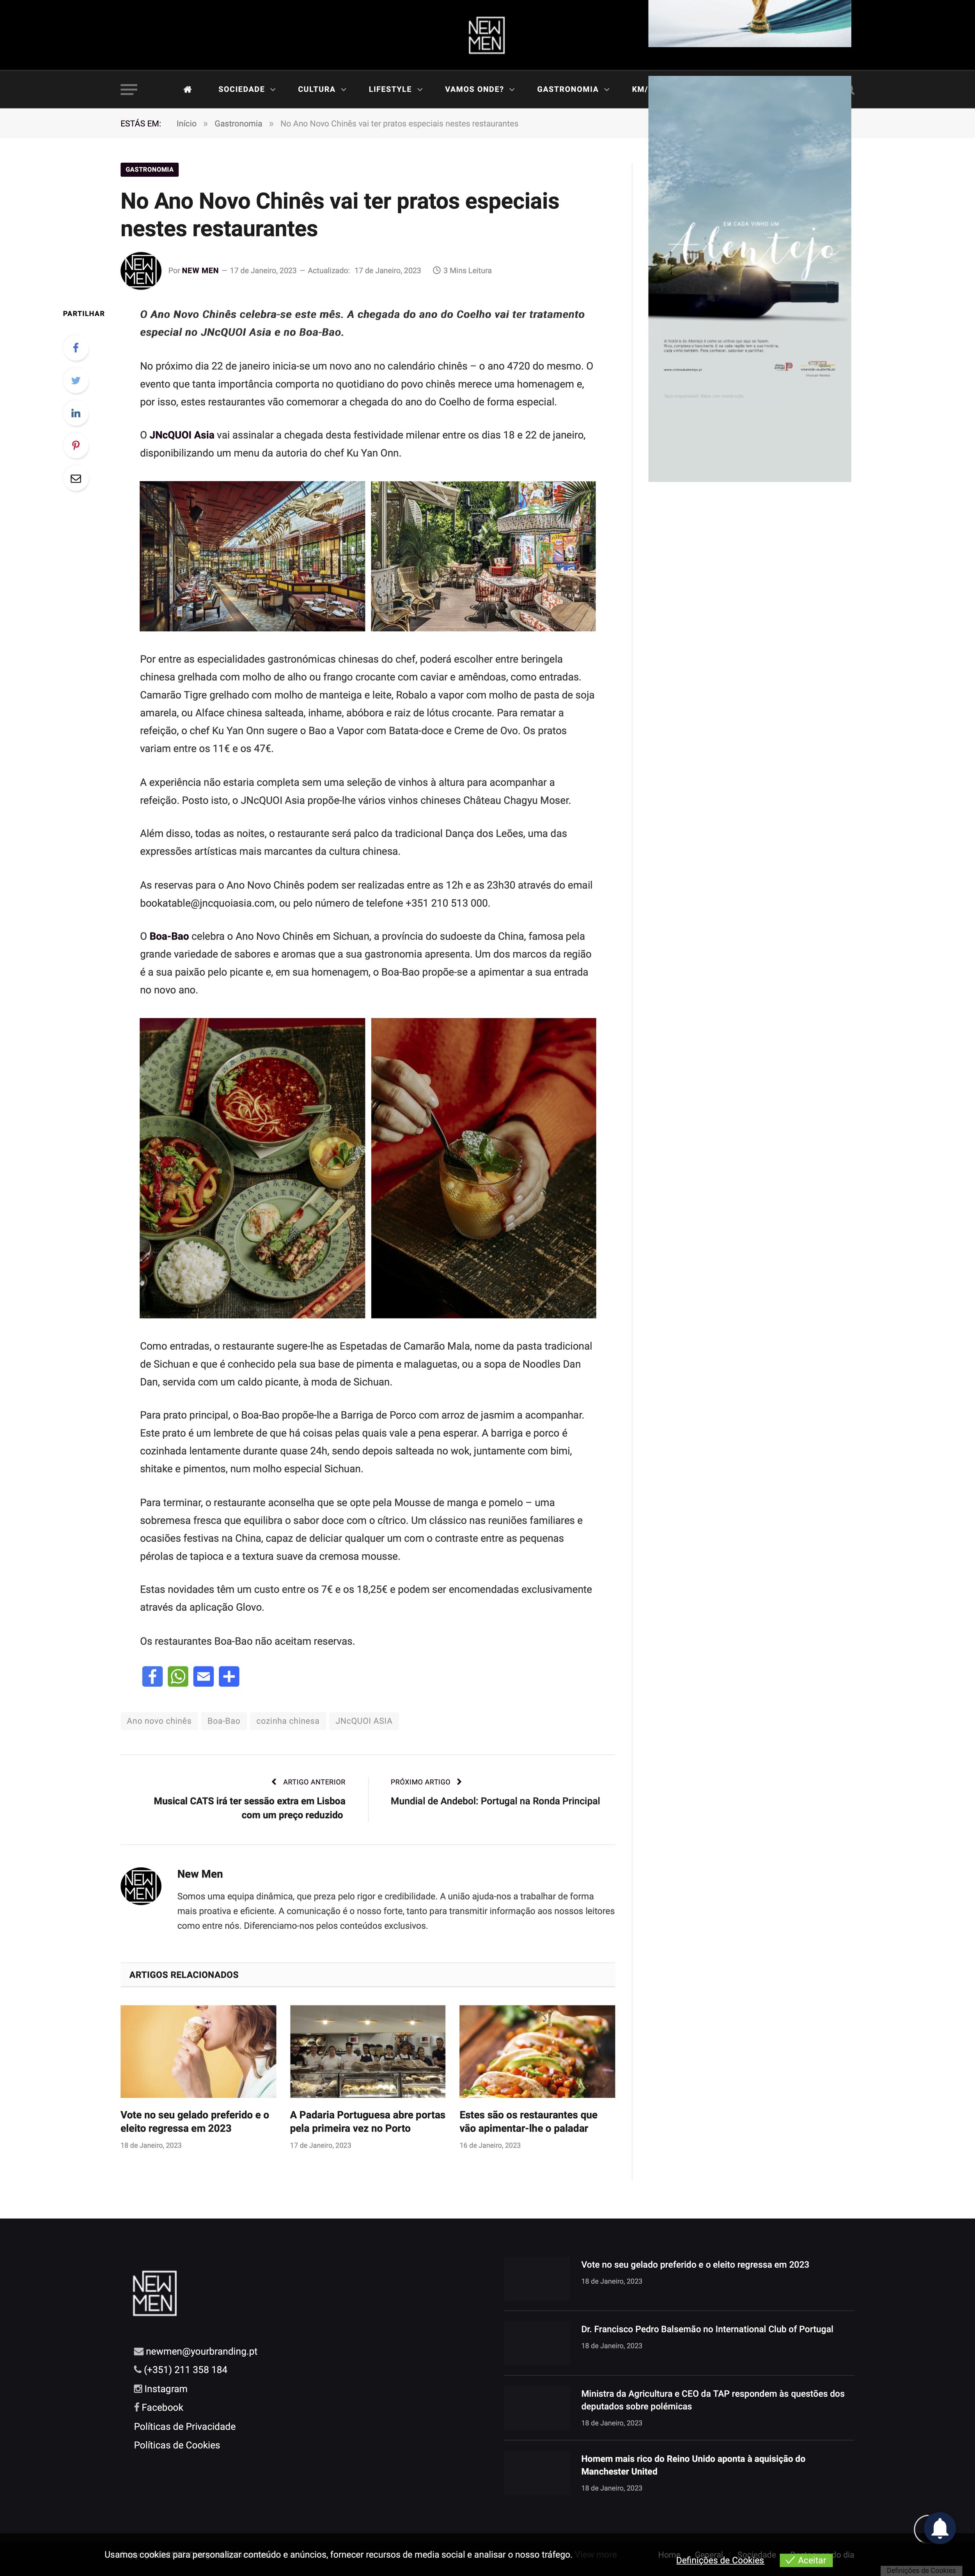 NewMen Online_No Ano Novo Chinês vai ter pratos especiais nestes restaurantes.jpg